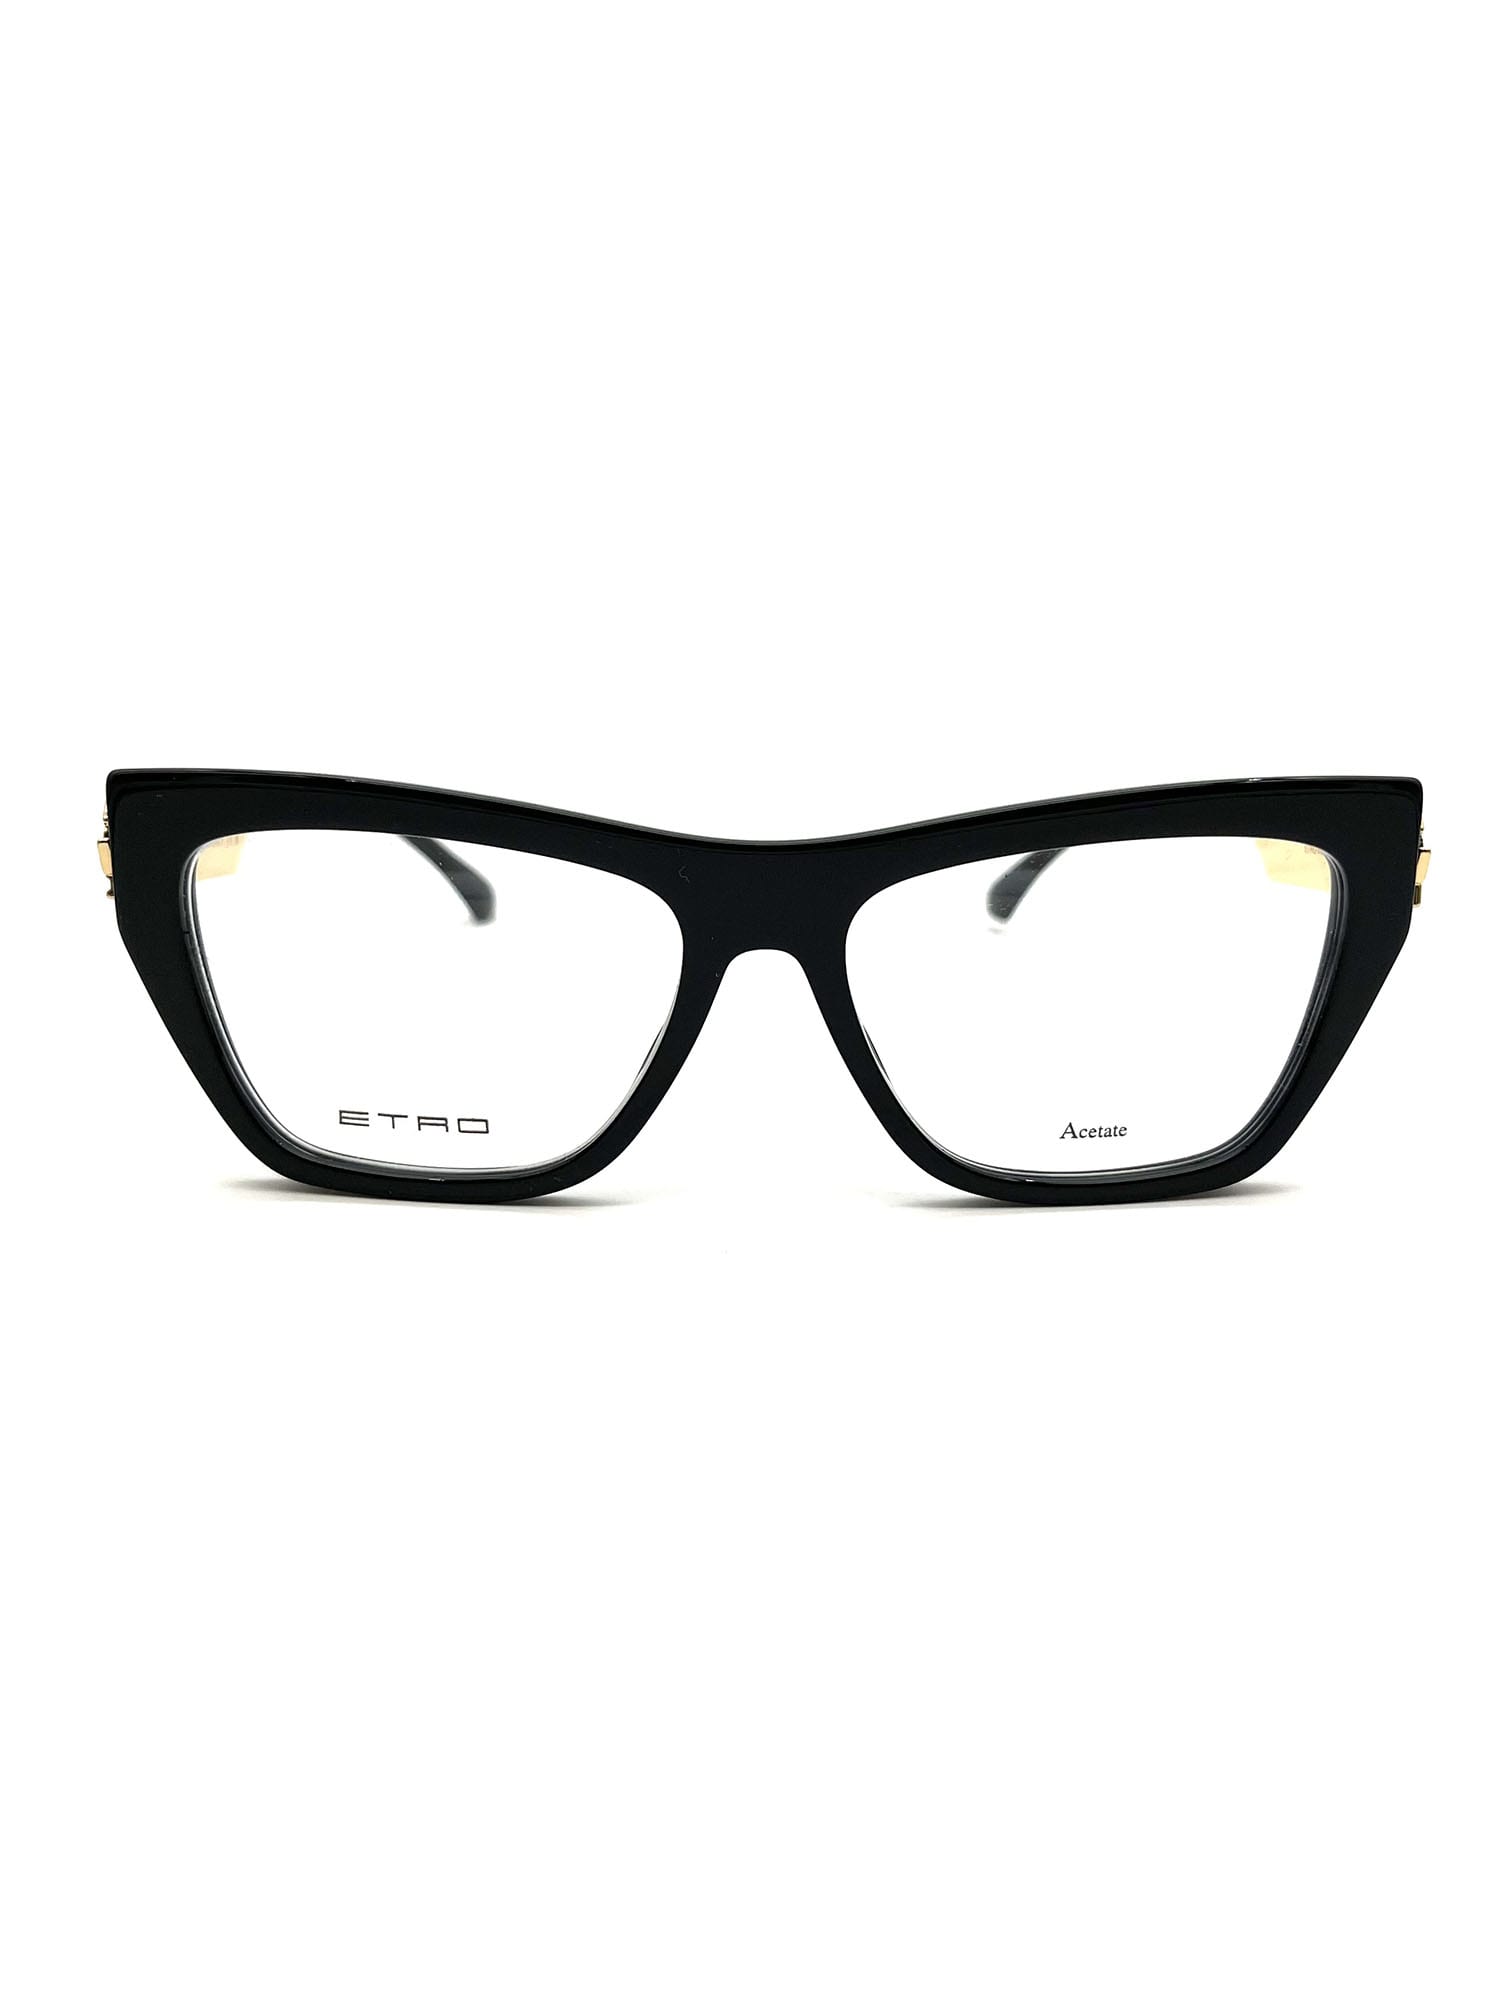 Etro 0029 Eyewear In Black